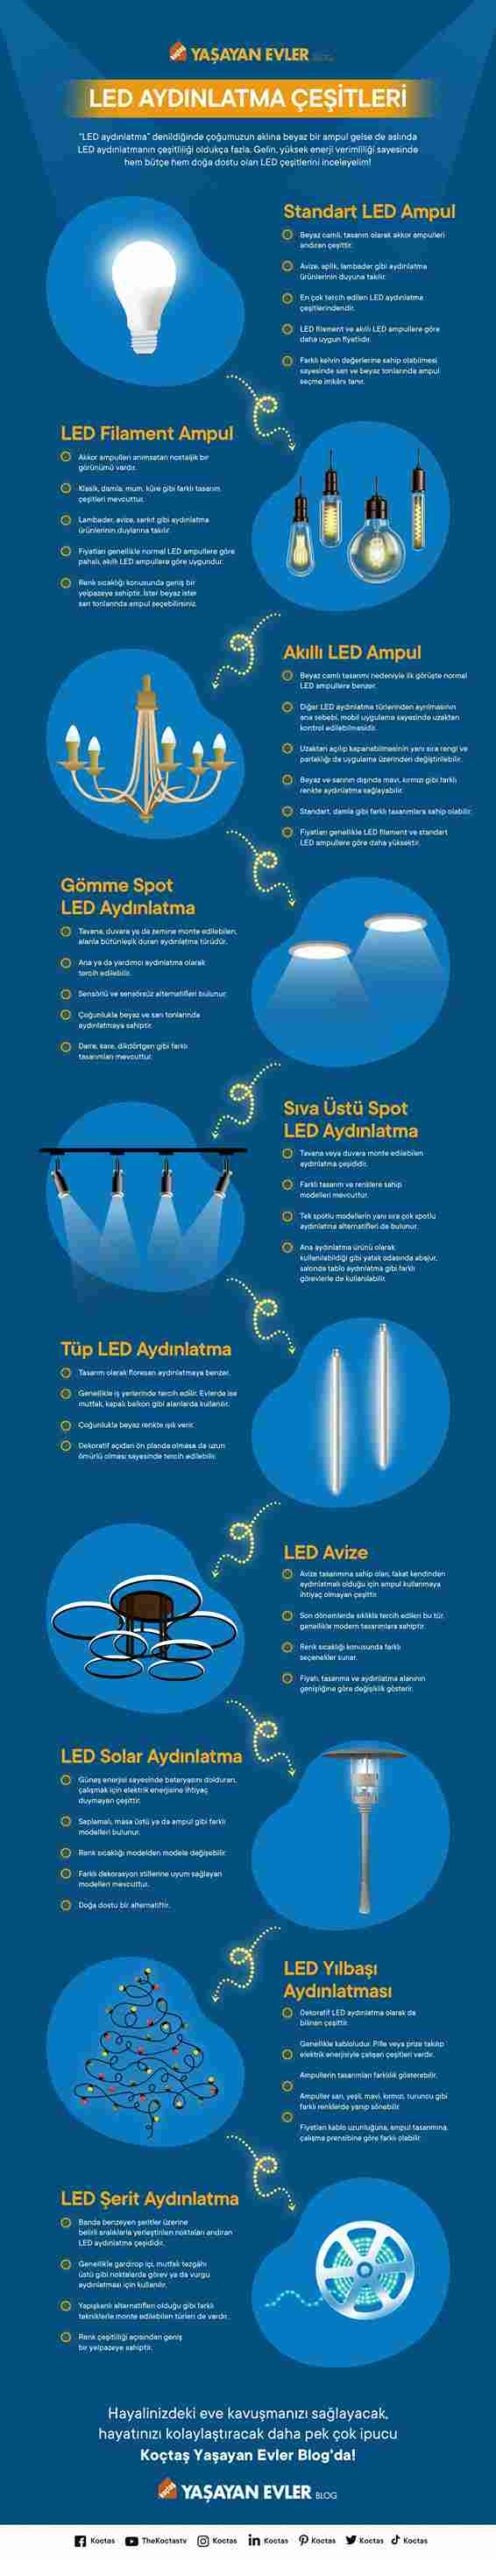 LED Aydınlatma Çeşitleri